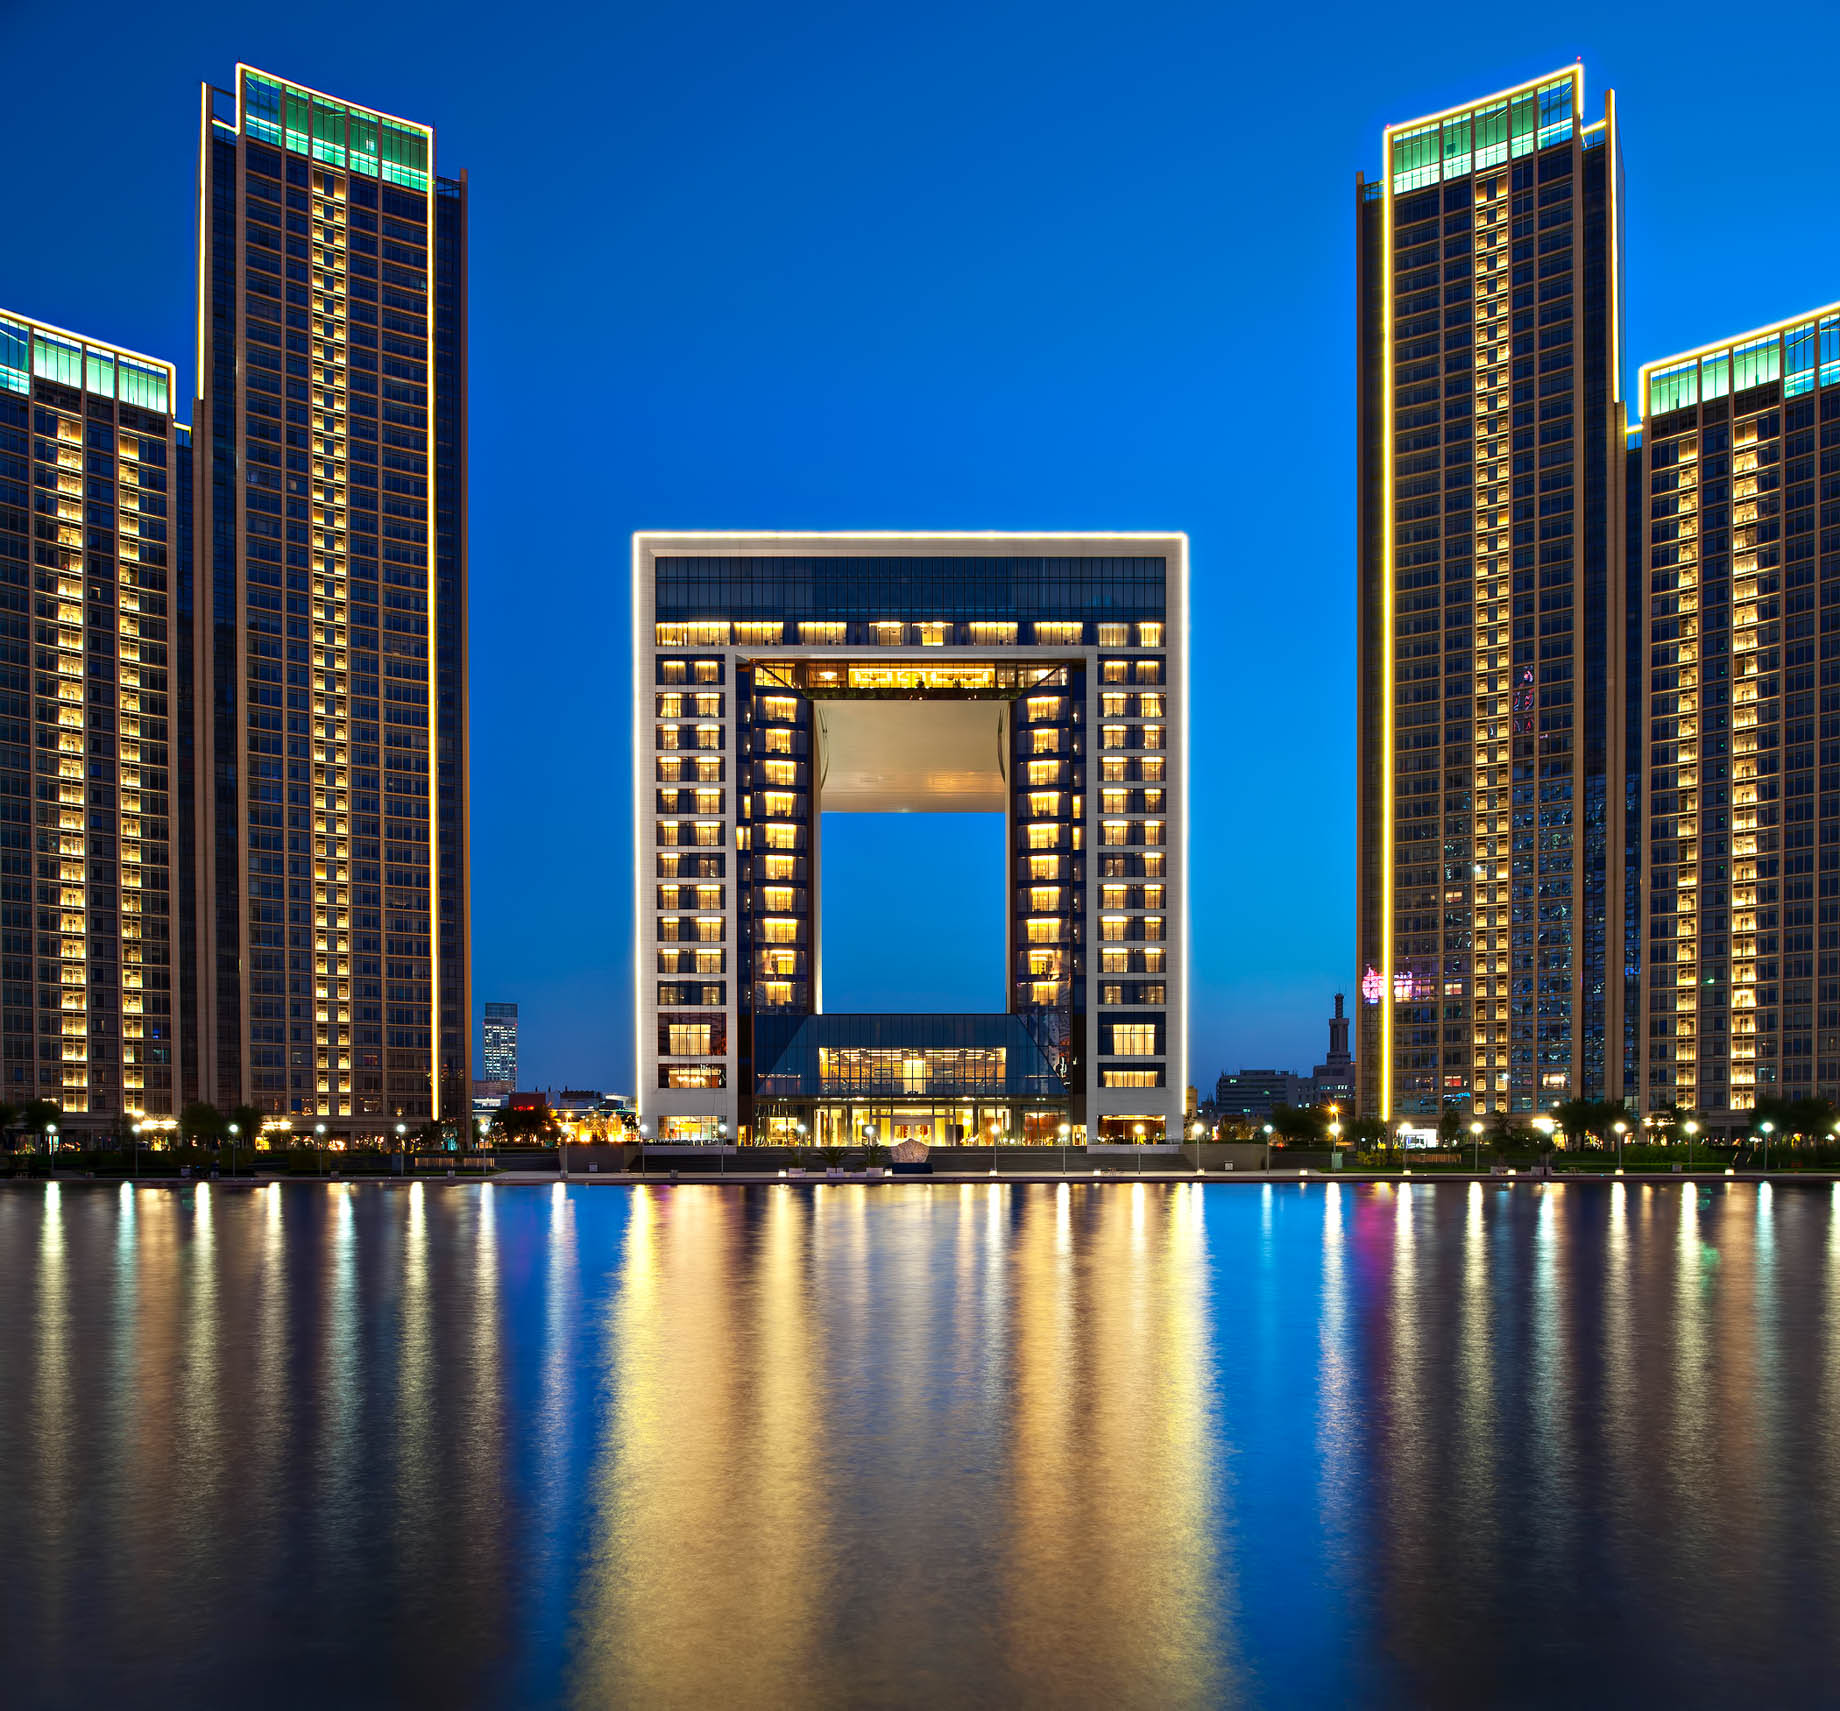 The St. Regis Tianjin Hotel – Tianjin, China – Night River View